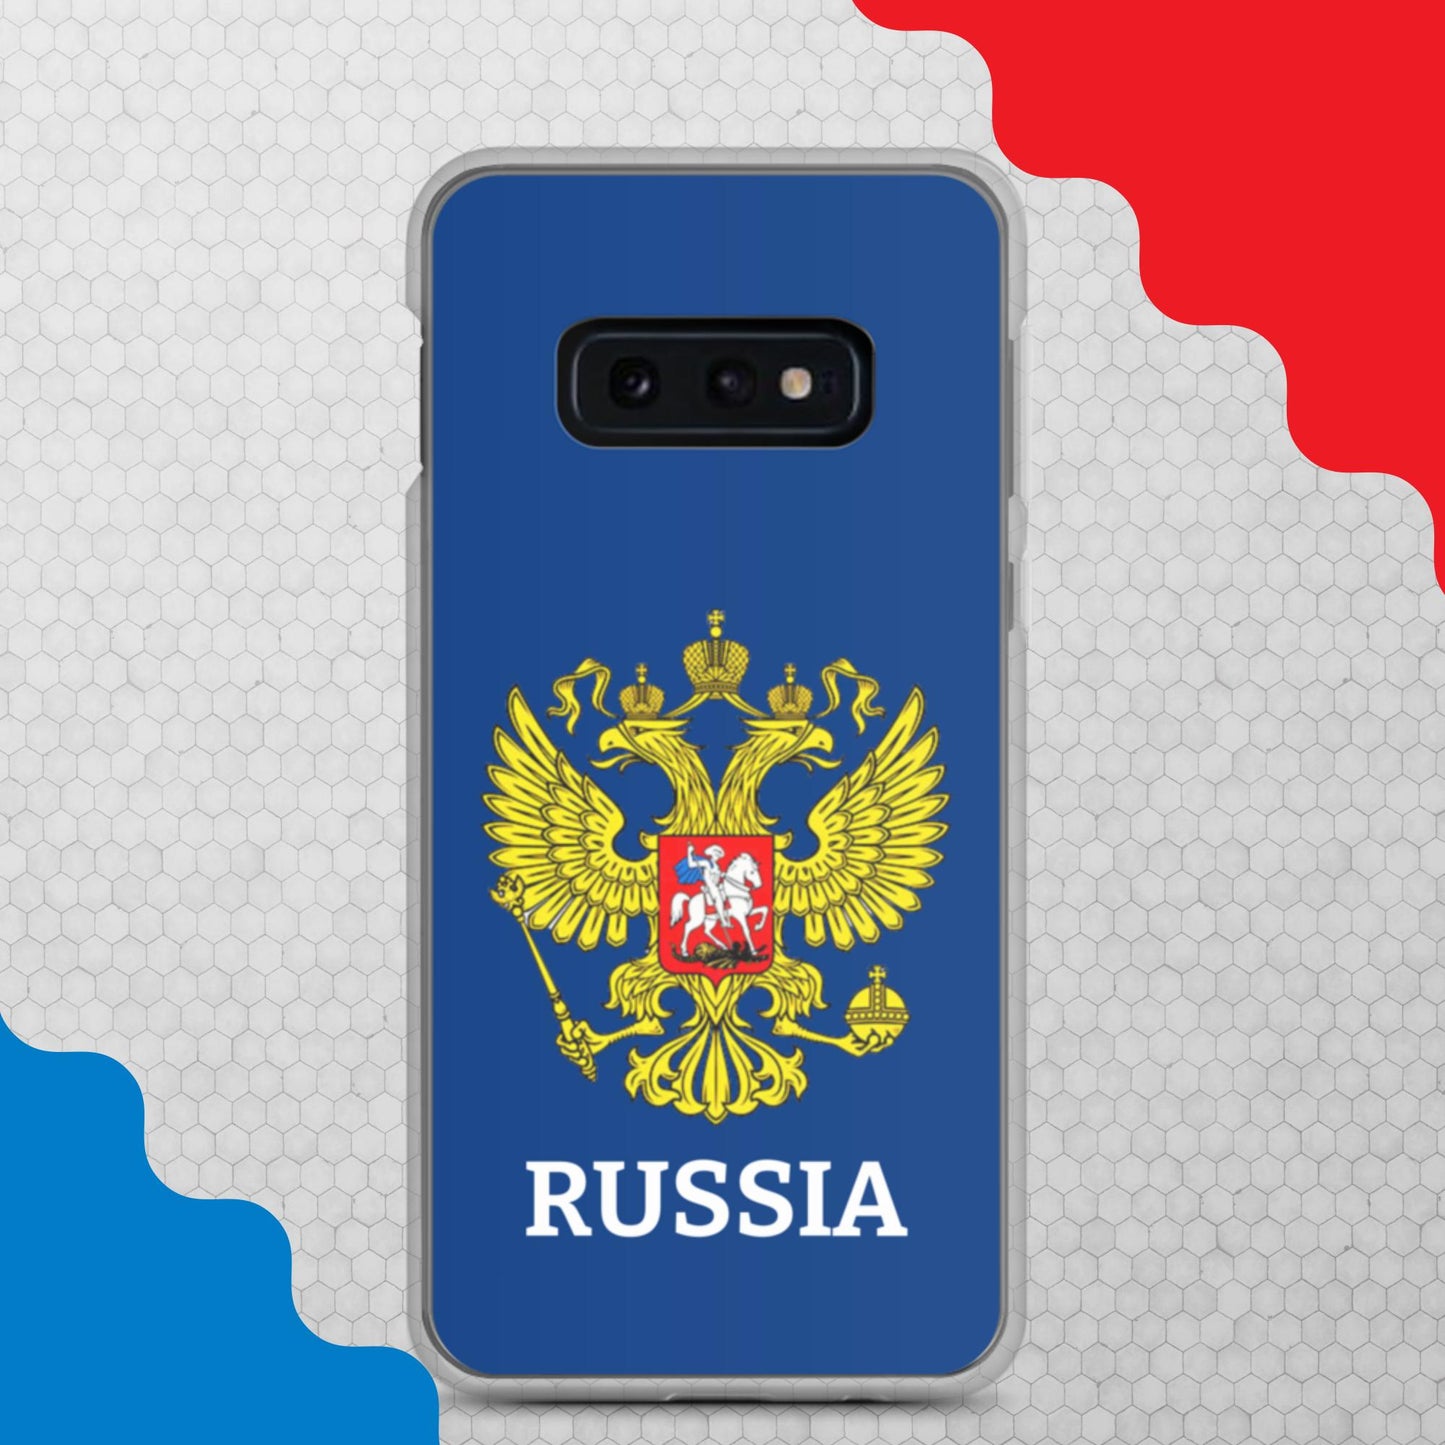 Samsung-Handyhülle mit Russland-Wappen in blau (alle Modelle)